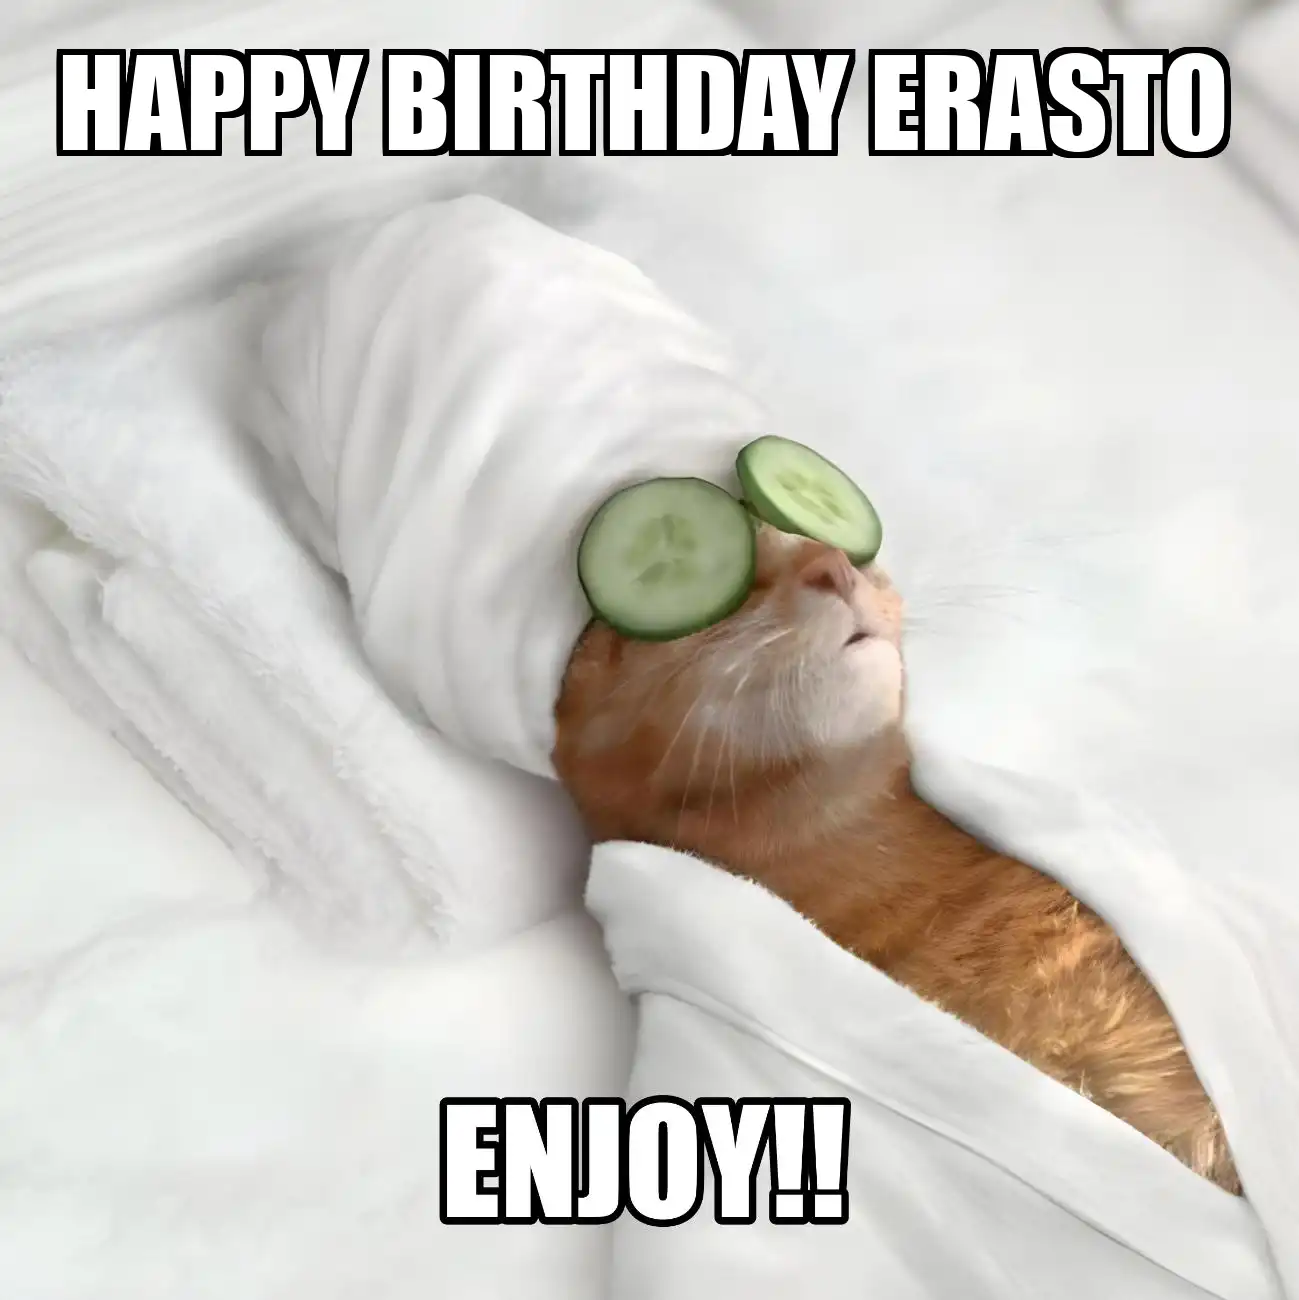 Happy Birthday Erasto Enjoy Cat Meme